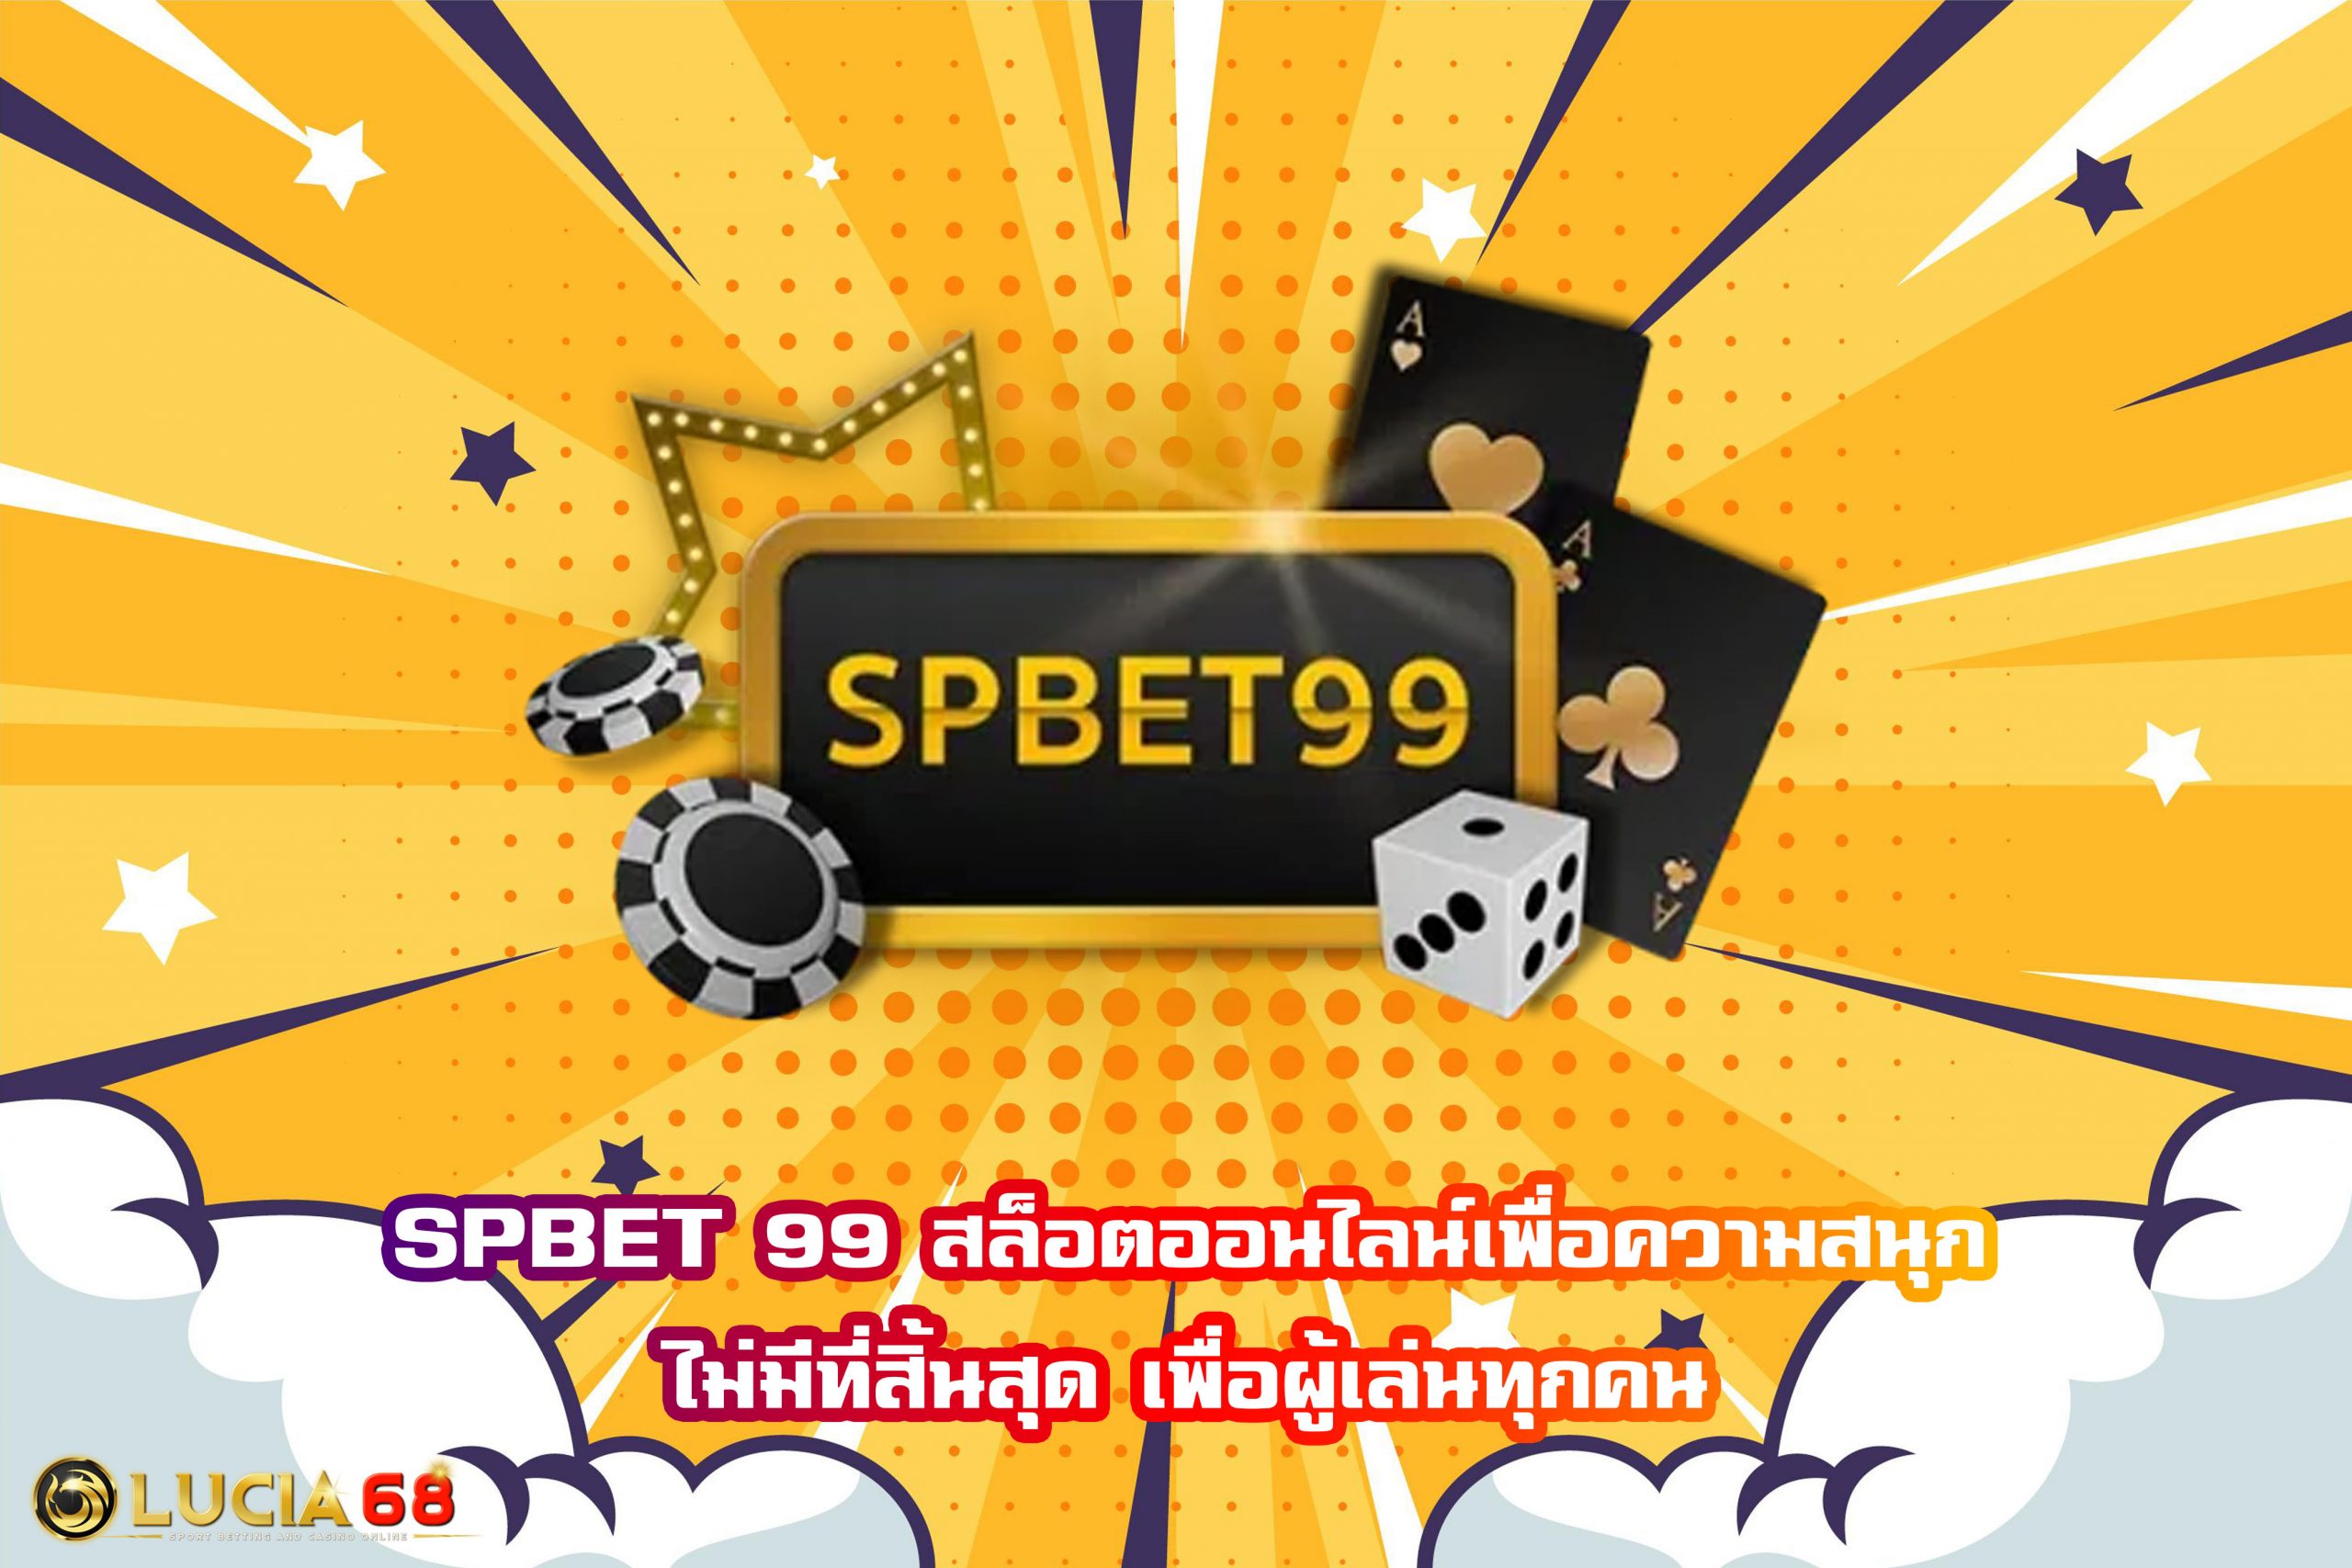 SPBET 99 สล็อตออนไลน์เพื่อความสนุกไม่มีที่สิ้นสุด เพื่อผู้เล่นทุกคน